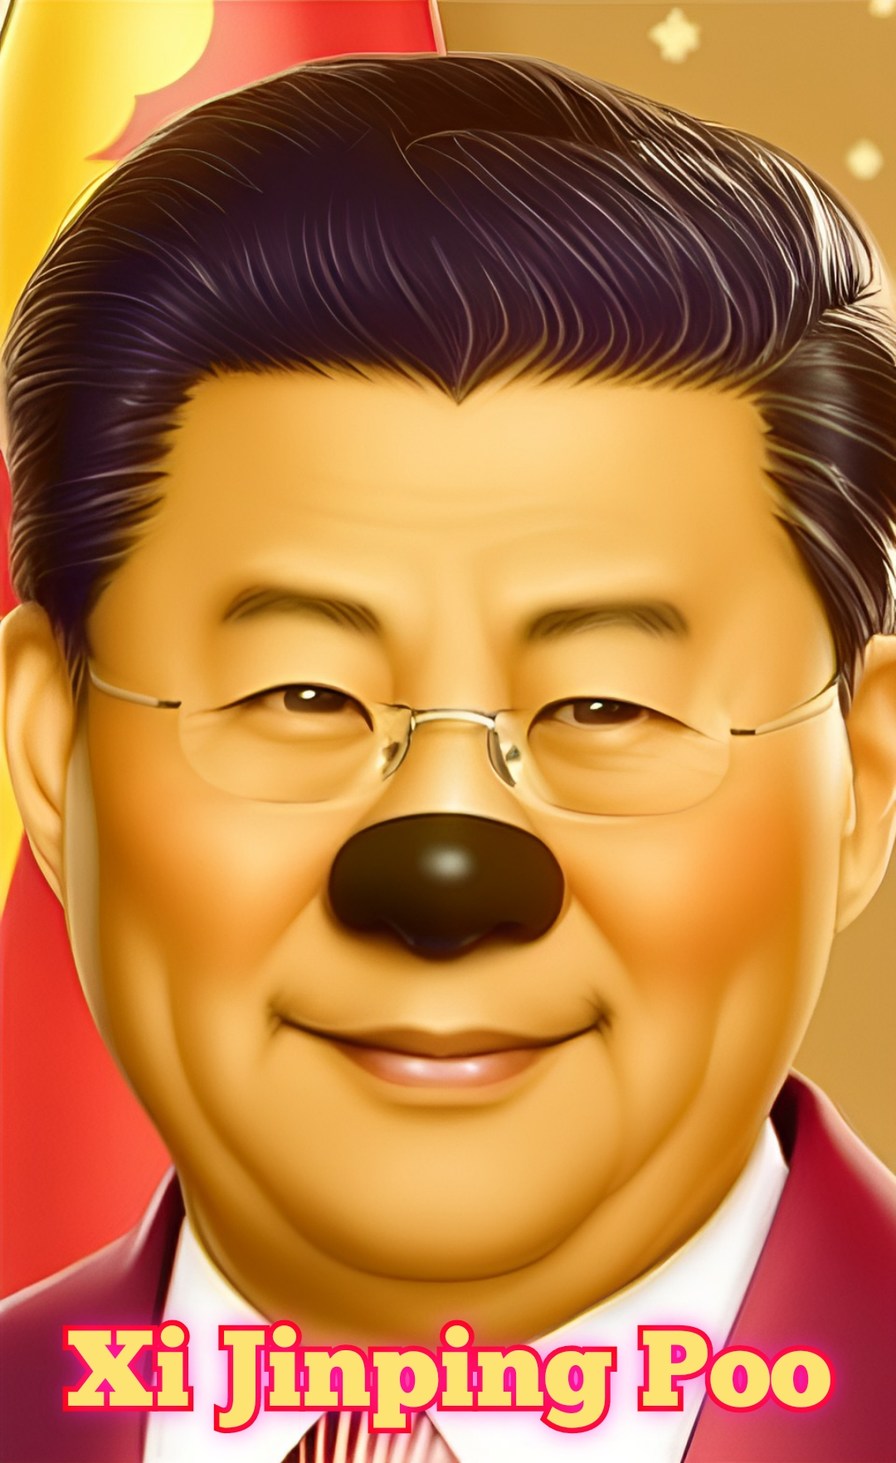 Xi Jinping Poo - meme